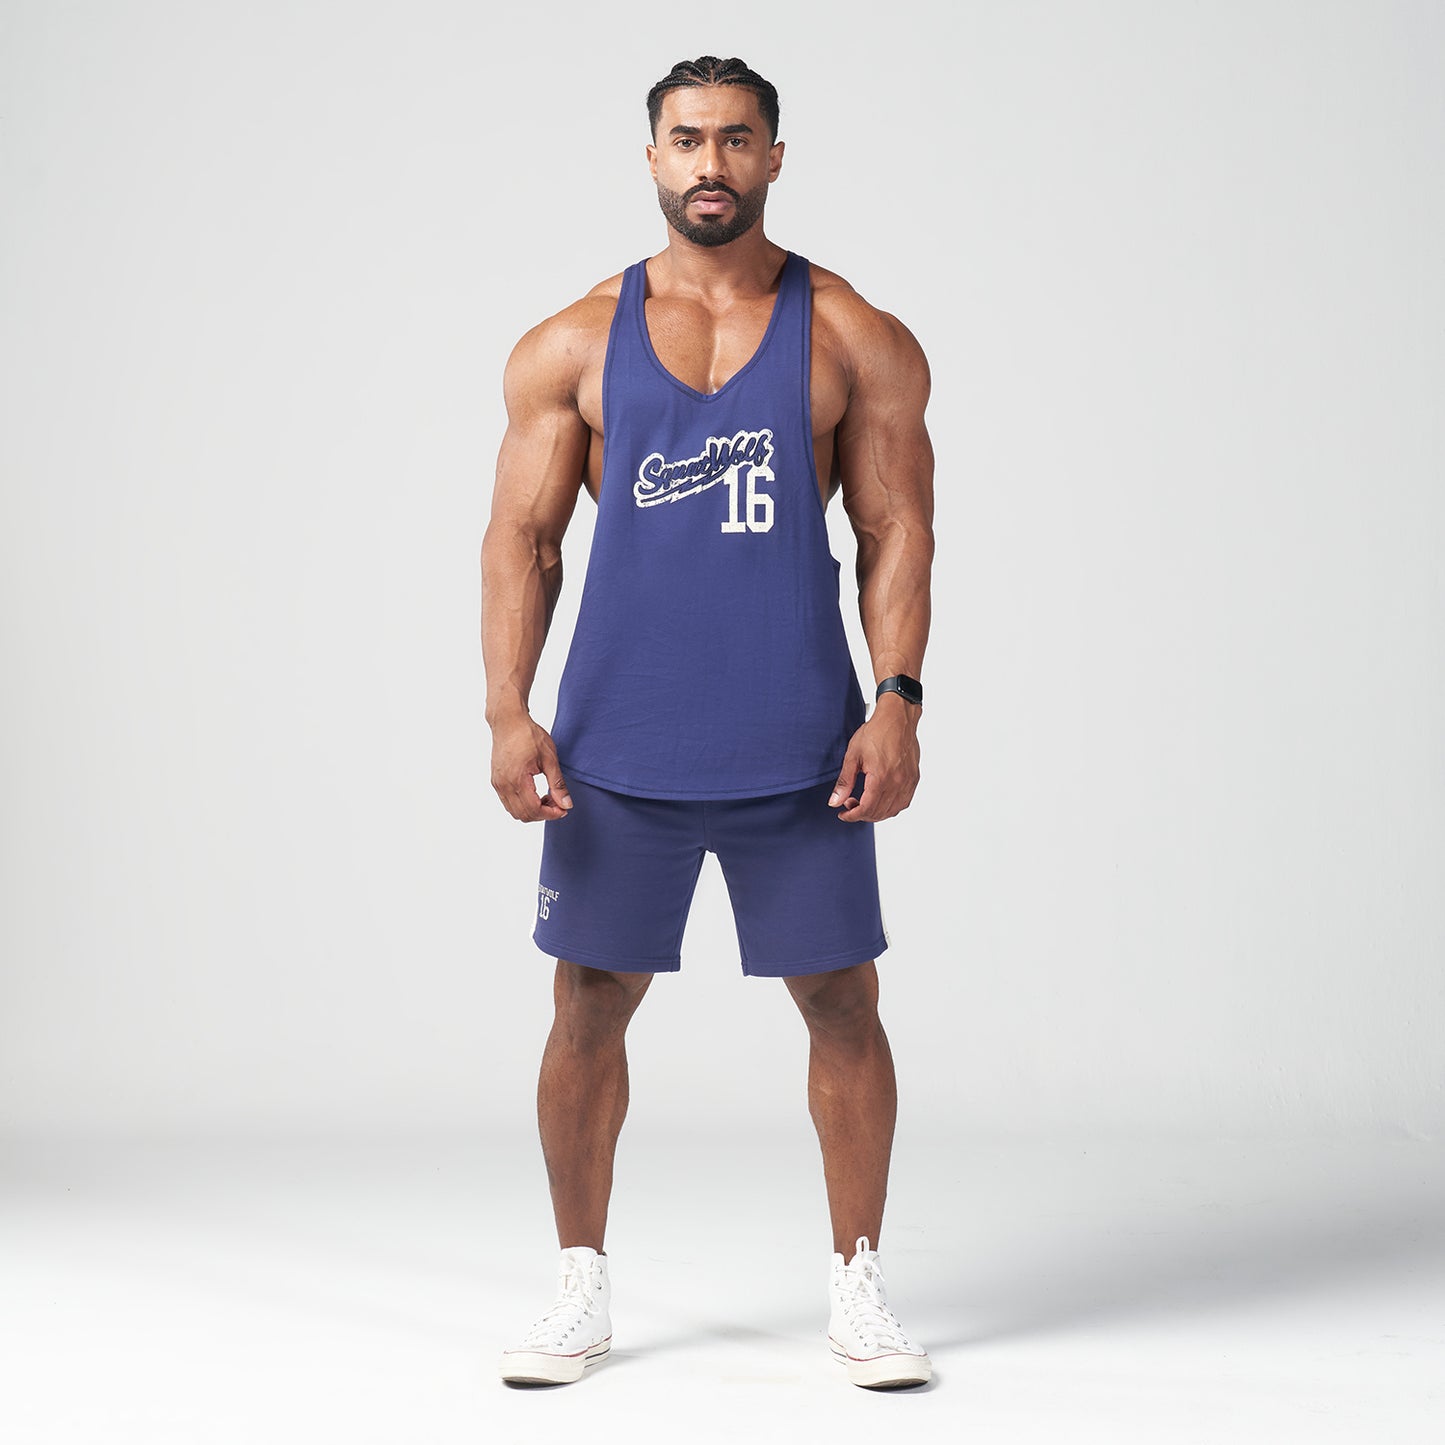 squatwolf-gym-wear-golden-era-vintage-stringer-patriot-blue-stringer-vests-for-men